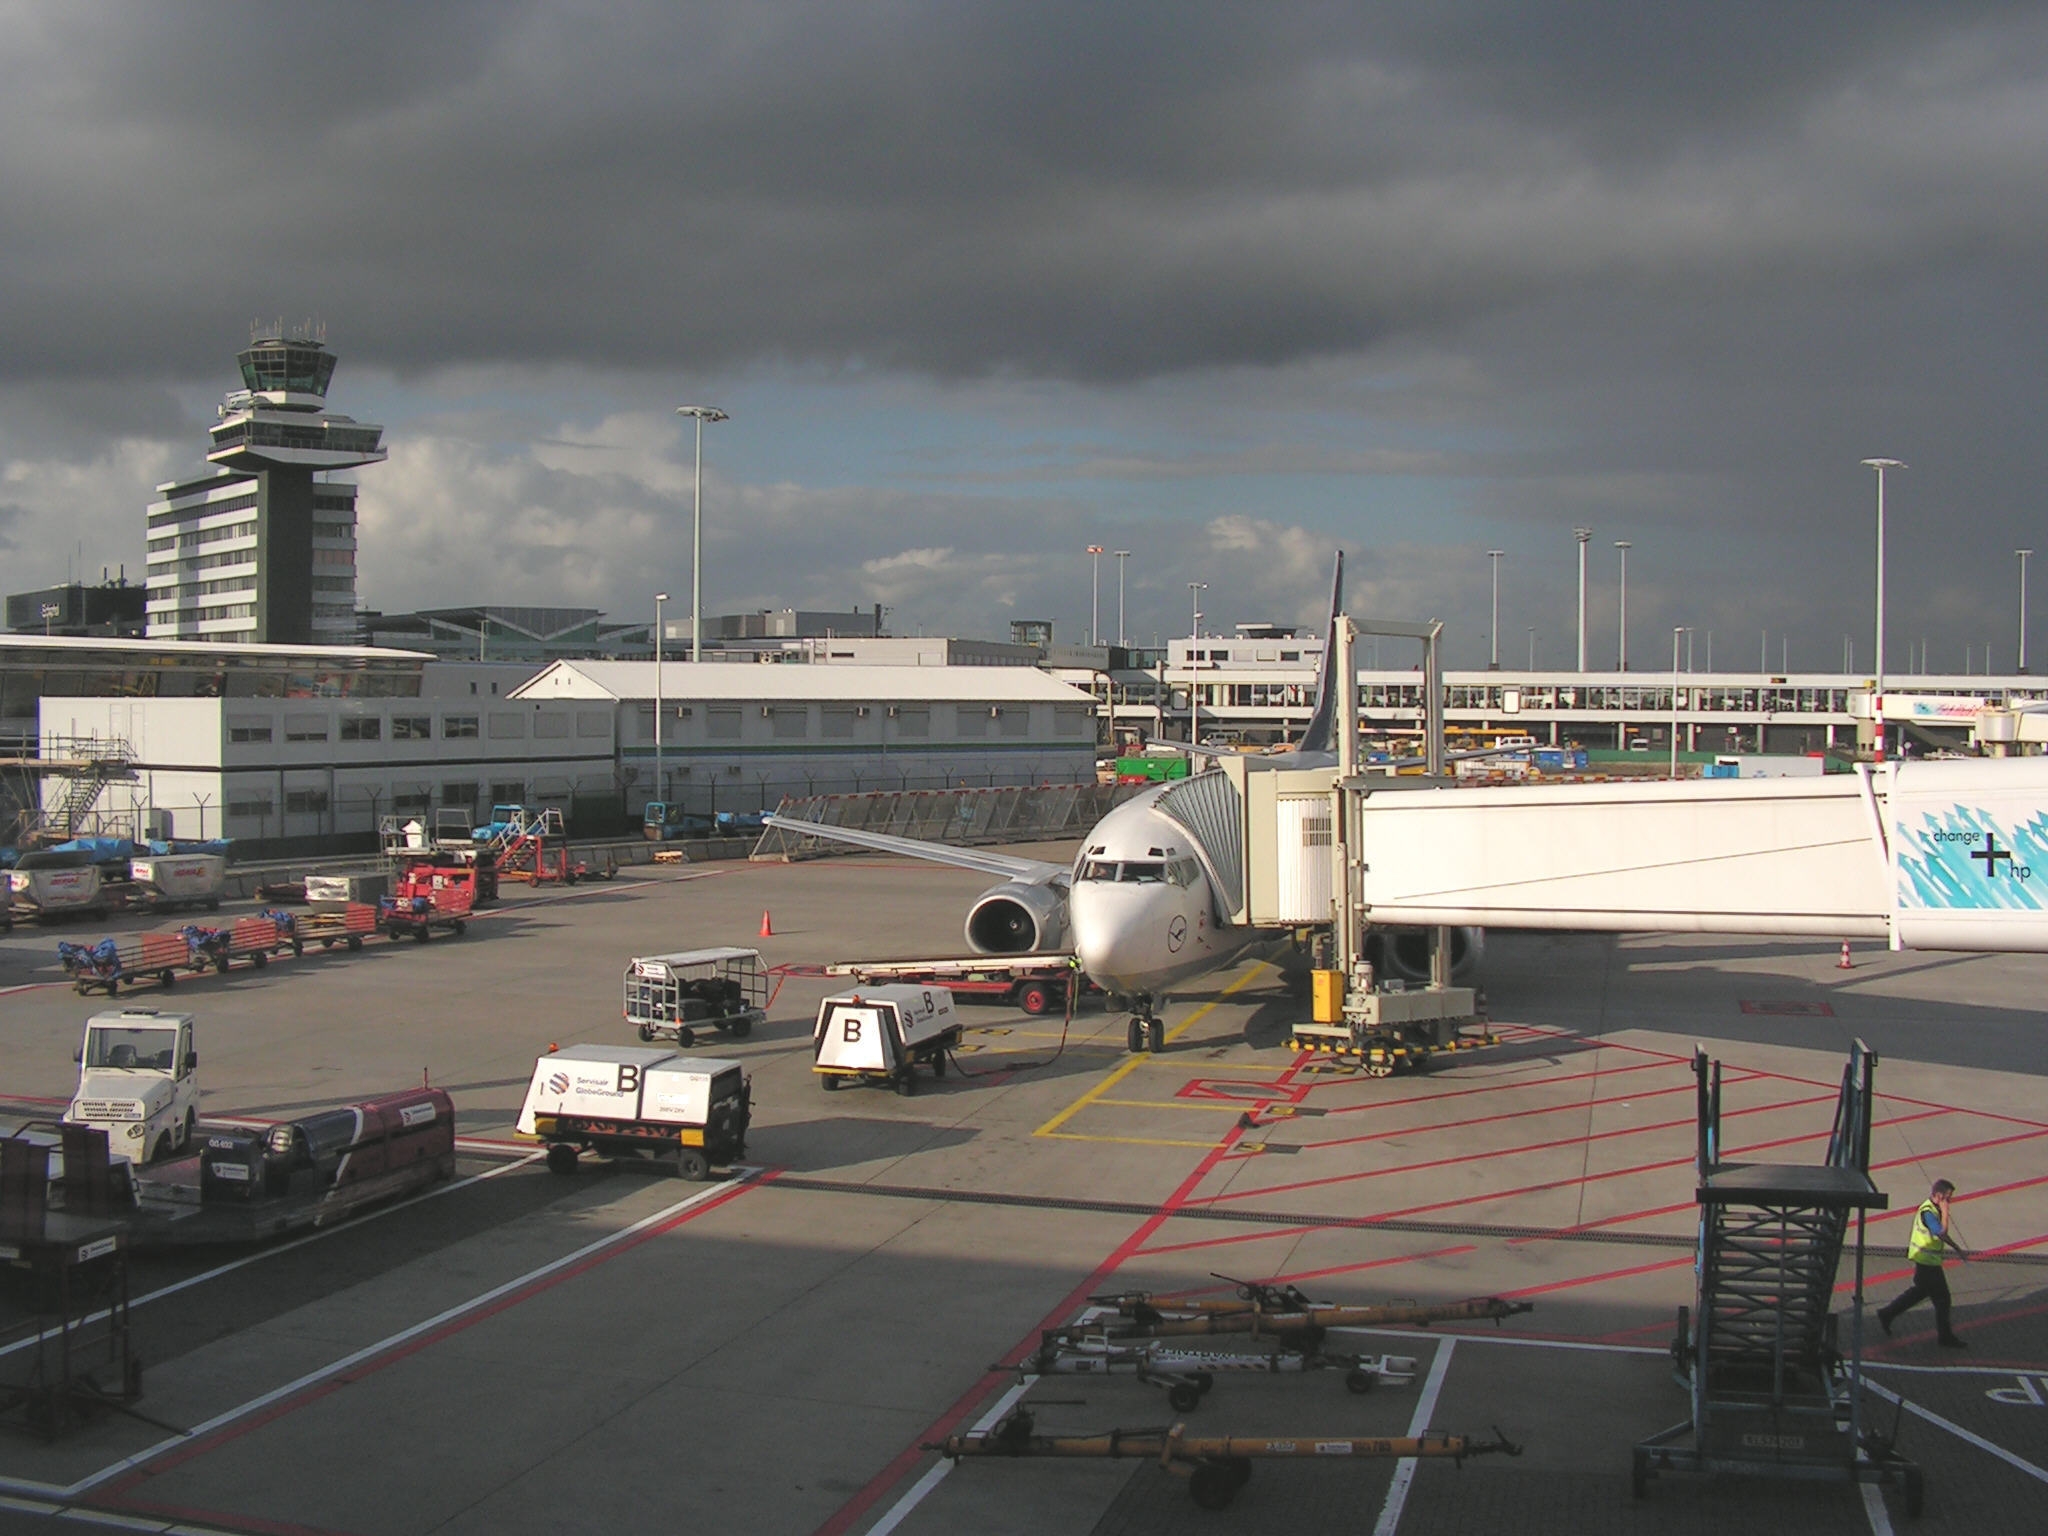 تدابير امنية اضافية اتخذت في مطار امستردام-شيبول بعدما تلقت السلطات "معلومة تتعلق بالمطار" في ظل المخاطر الارهابية التي تهدد اوروبا بالكامل